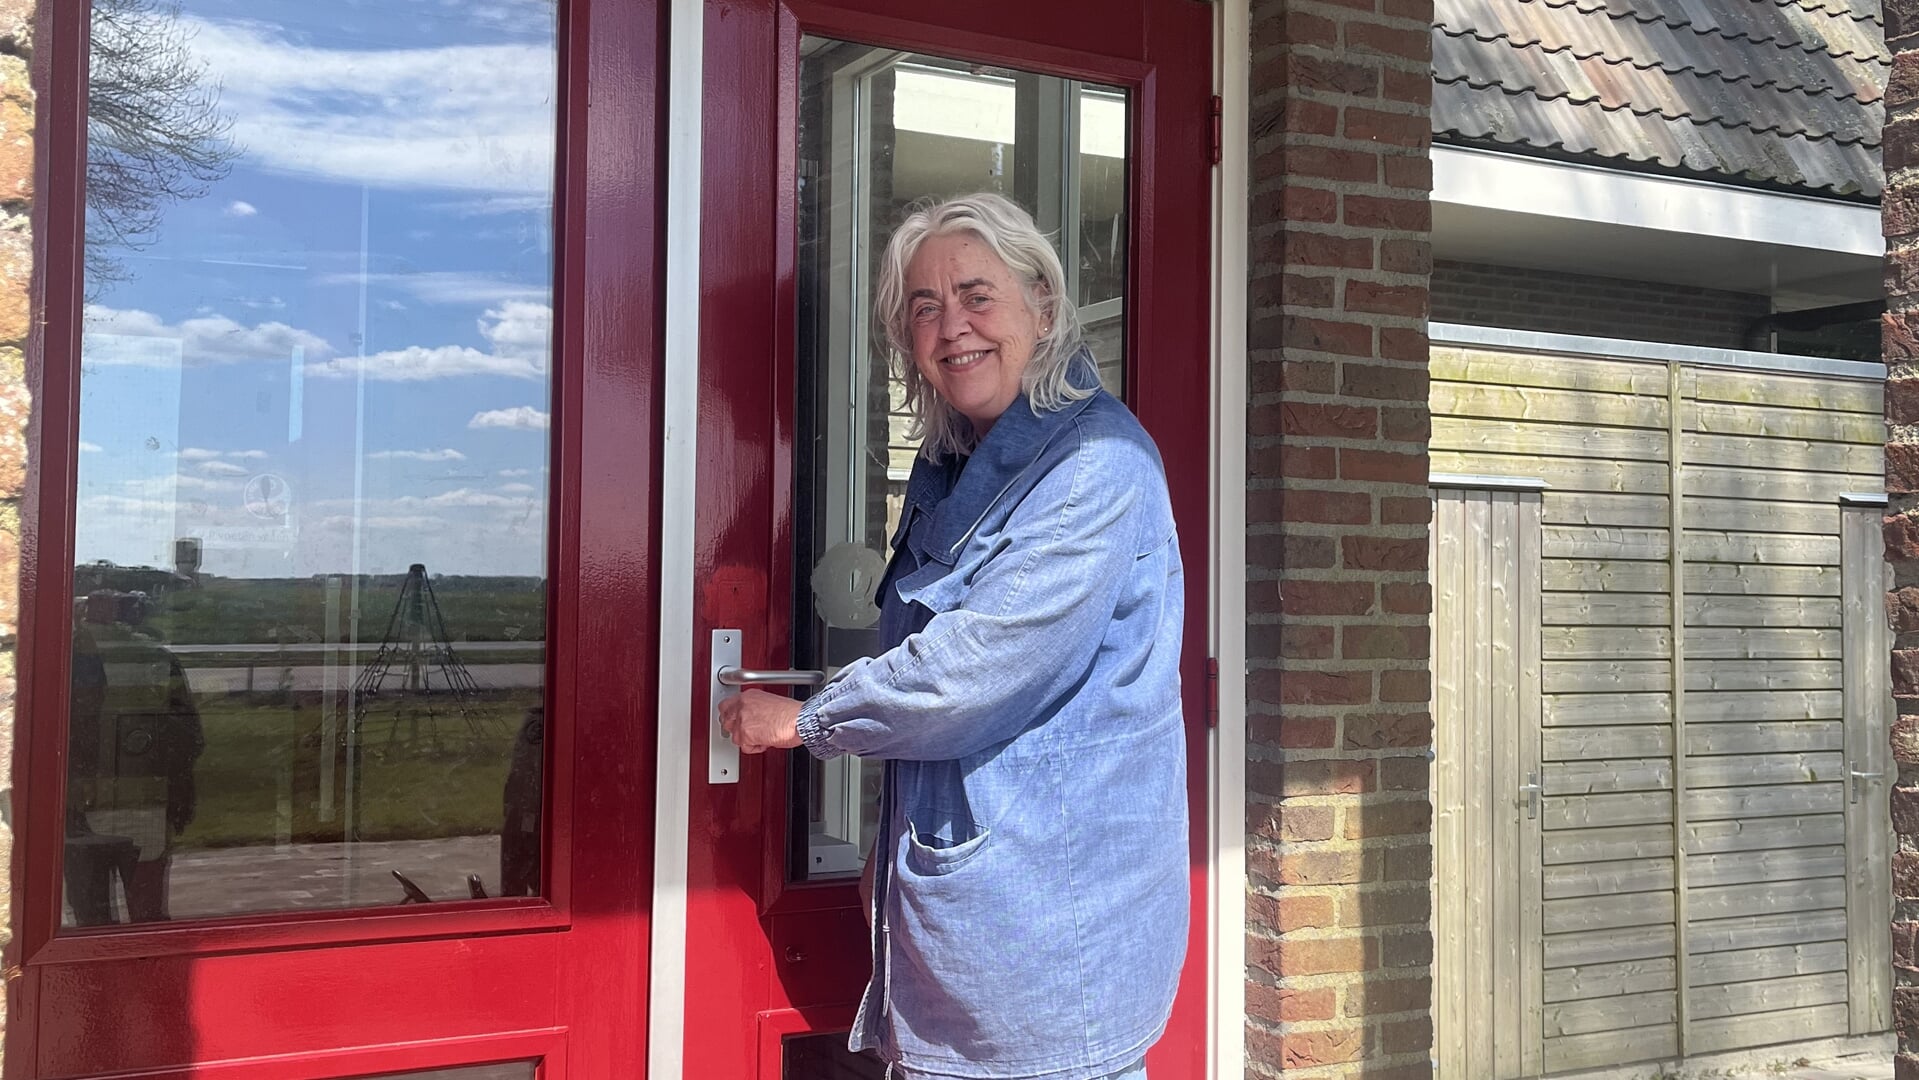 Directrice Tineke de Jong opent de deuren van de openbare basisschool in Aldeboarn. 